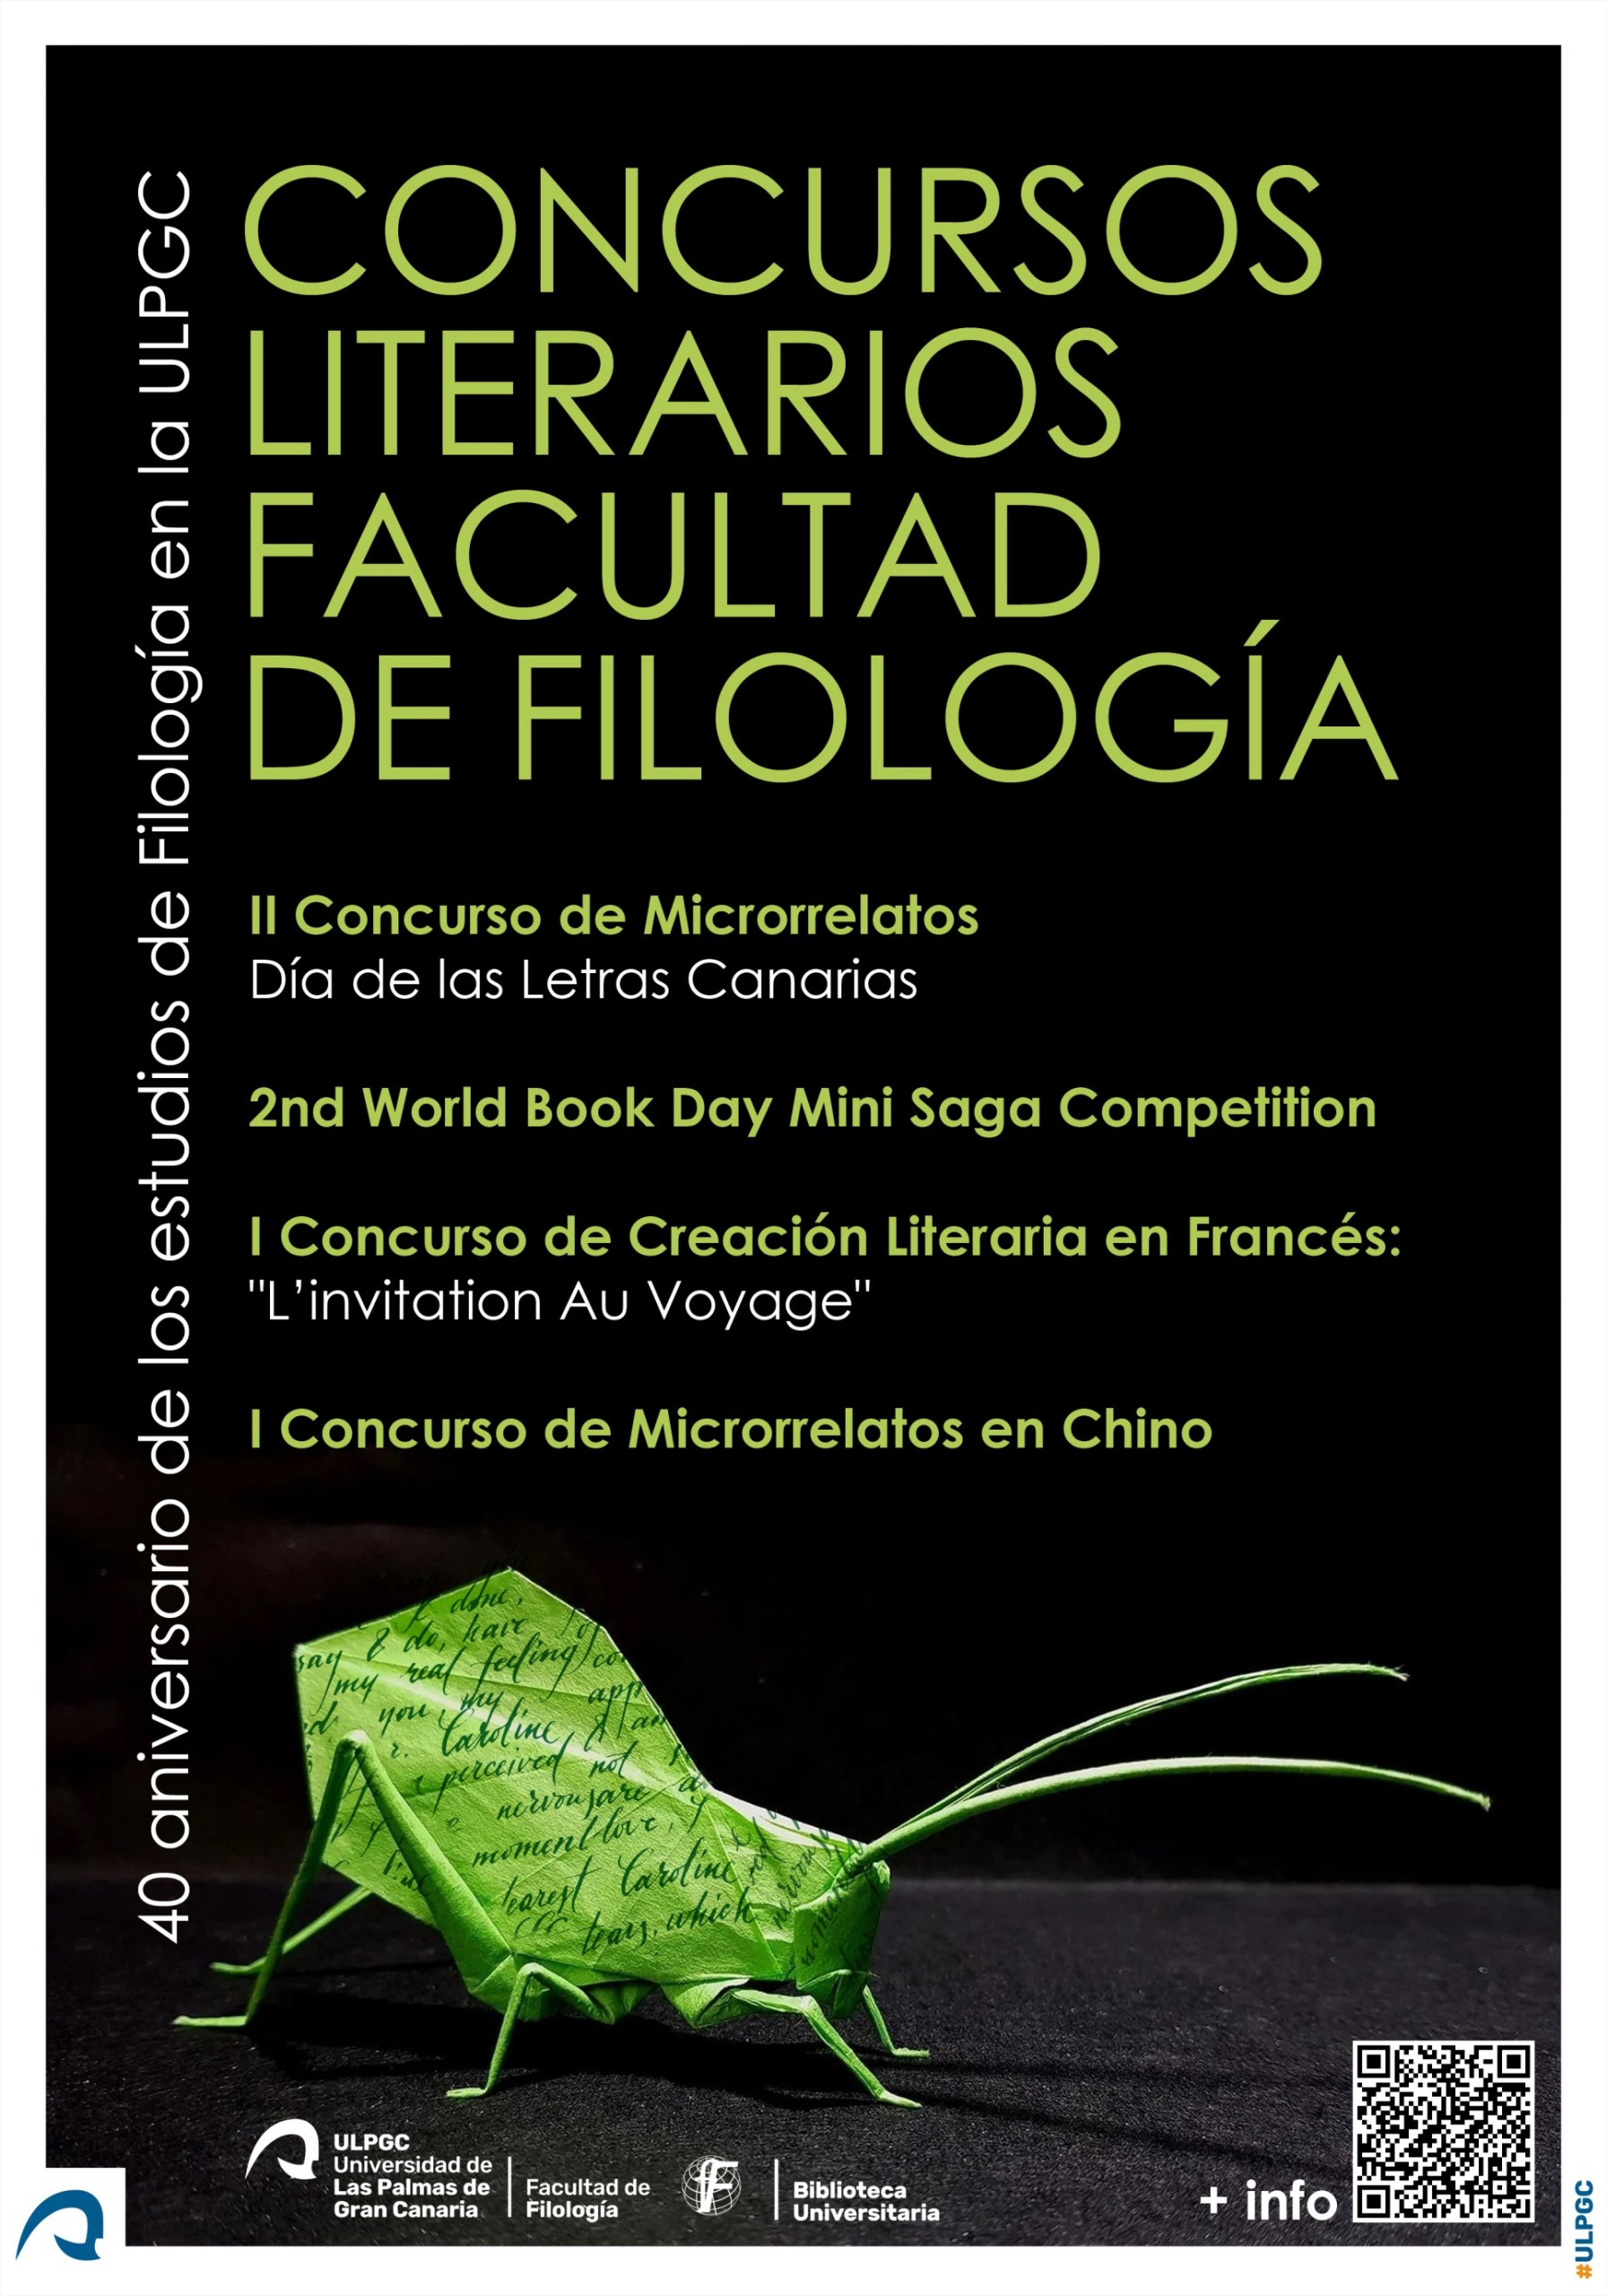 Cartel Concursos Literarios Facultad de Filología